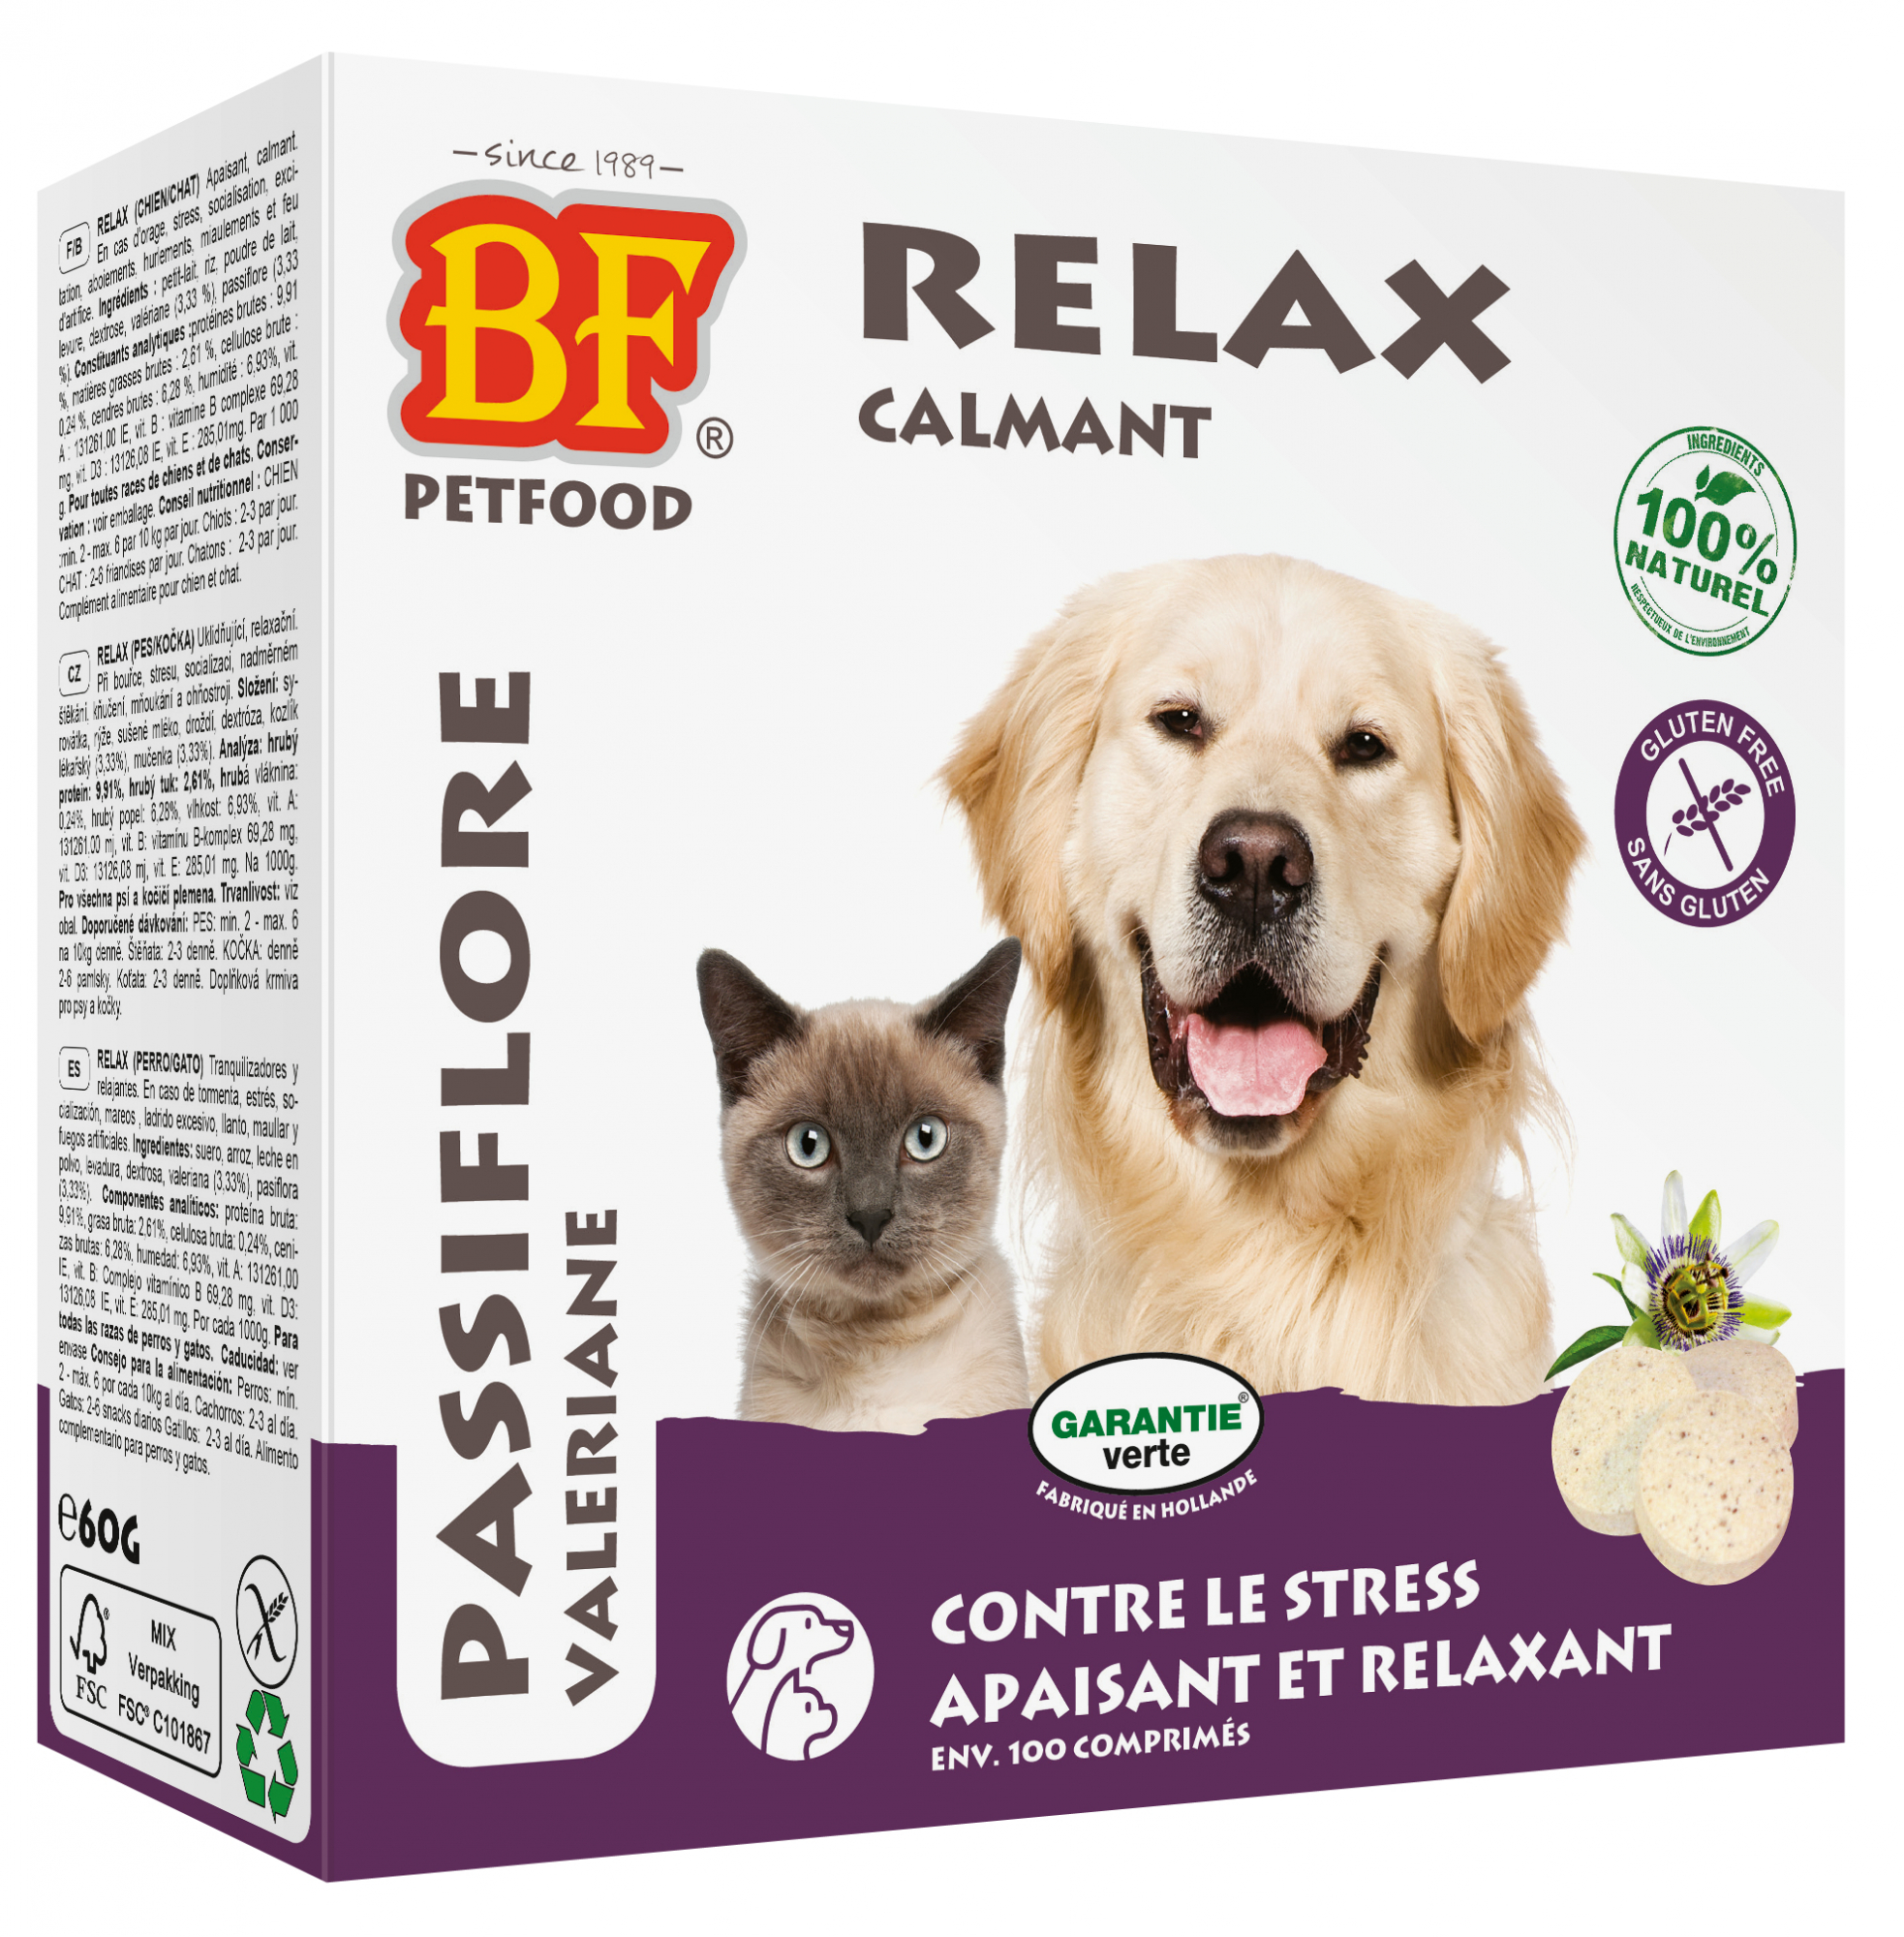 BIOFOOD 100% Natuurlijke relax tabletten, voor honden en katten